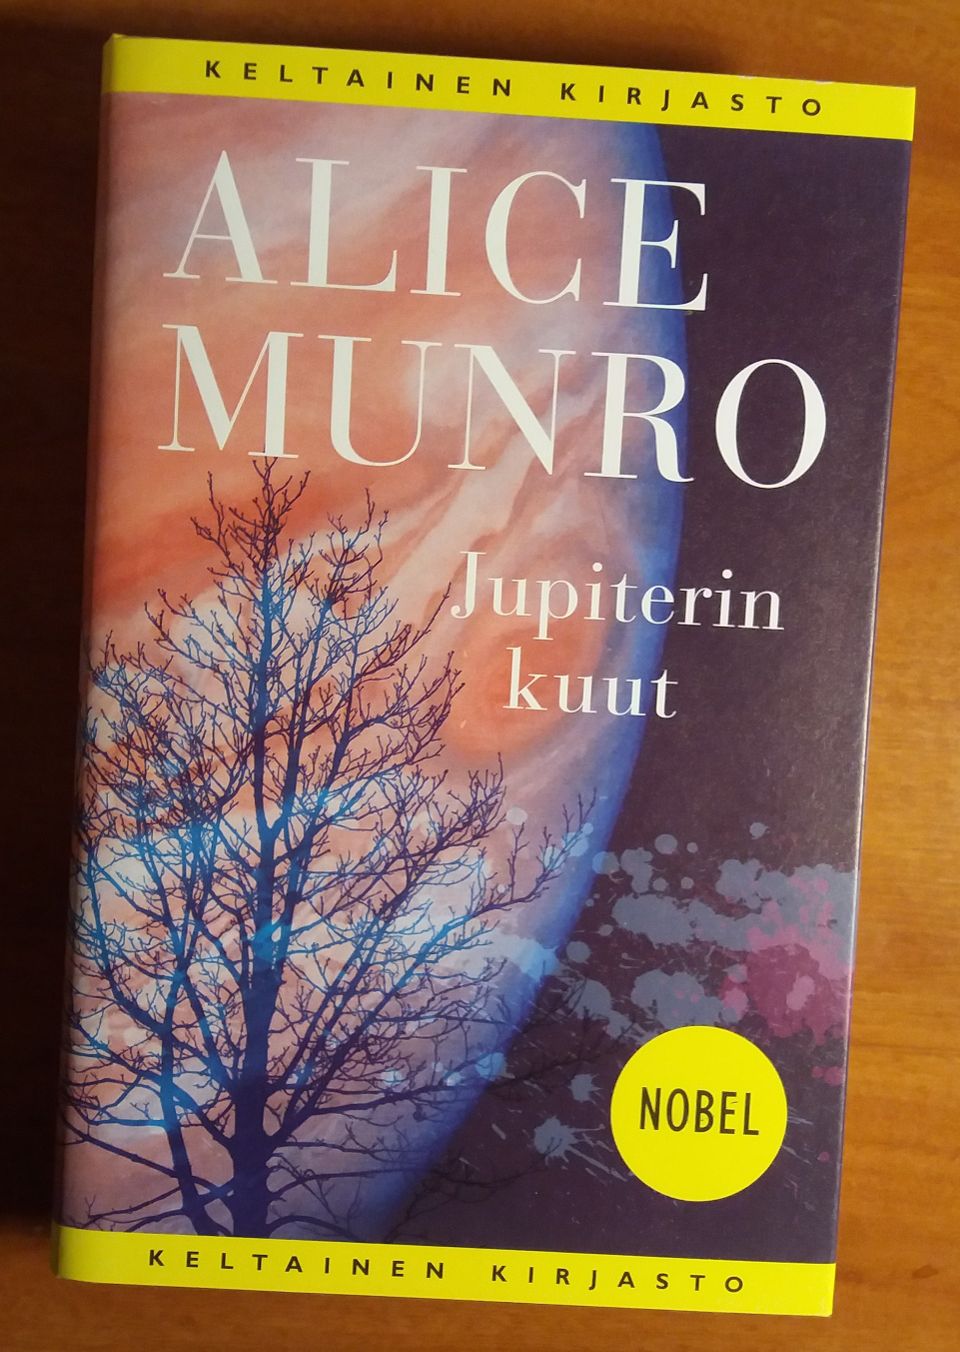 Alice Munro JUPITERIN KUUT Tammi Keltainen kirjasto 2017